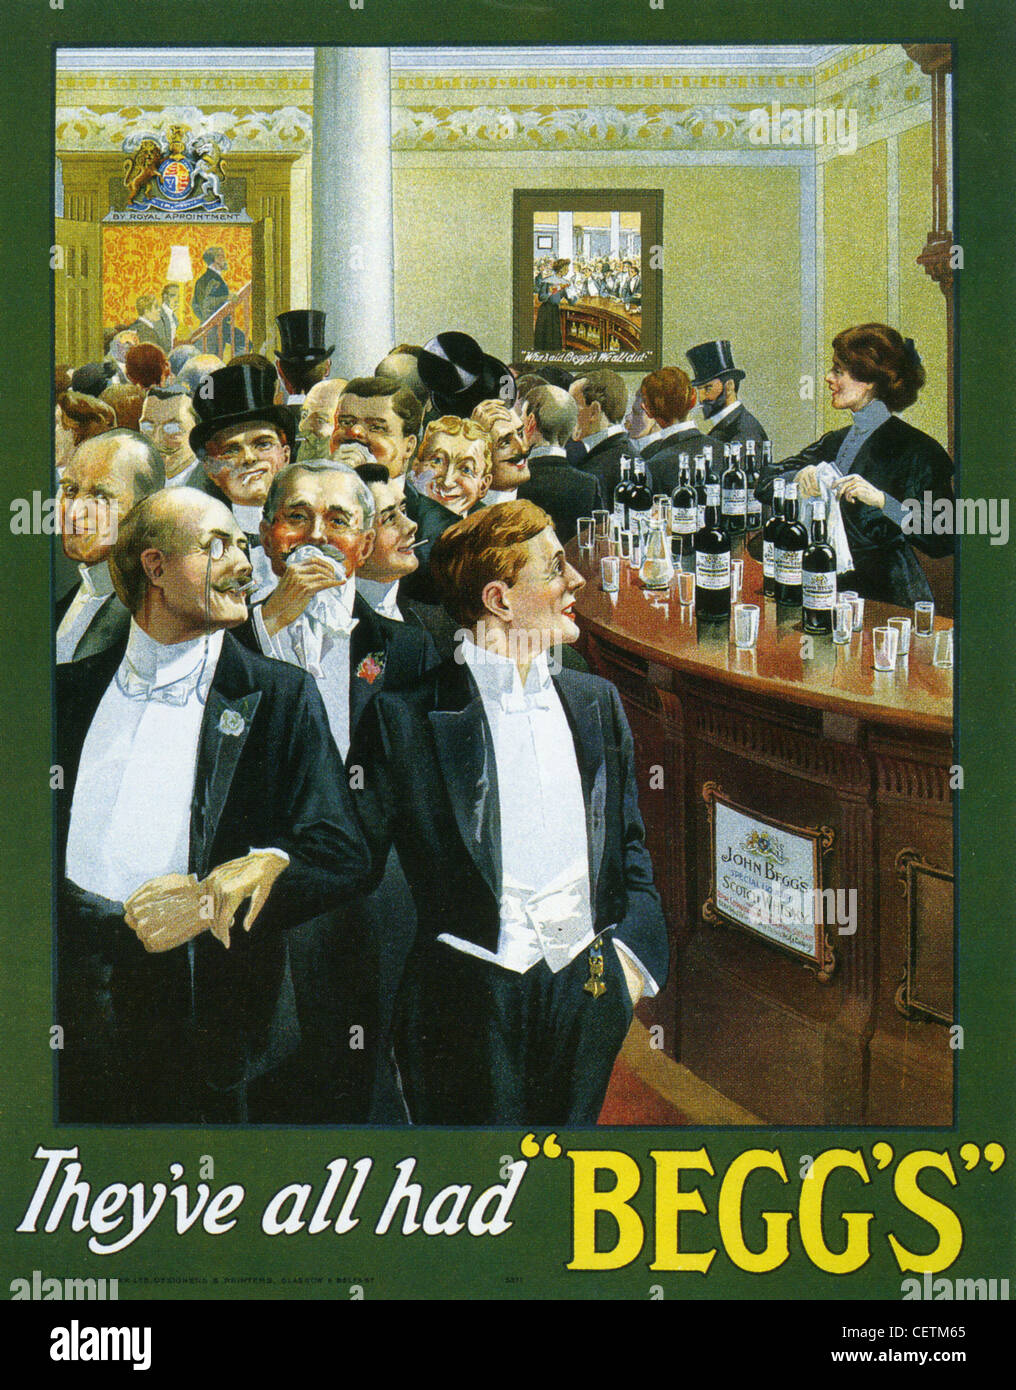 BEGGS Anzeige für das schottische Beggs Bier im Jahre 1902 Stockfoto